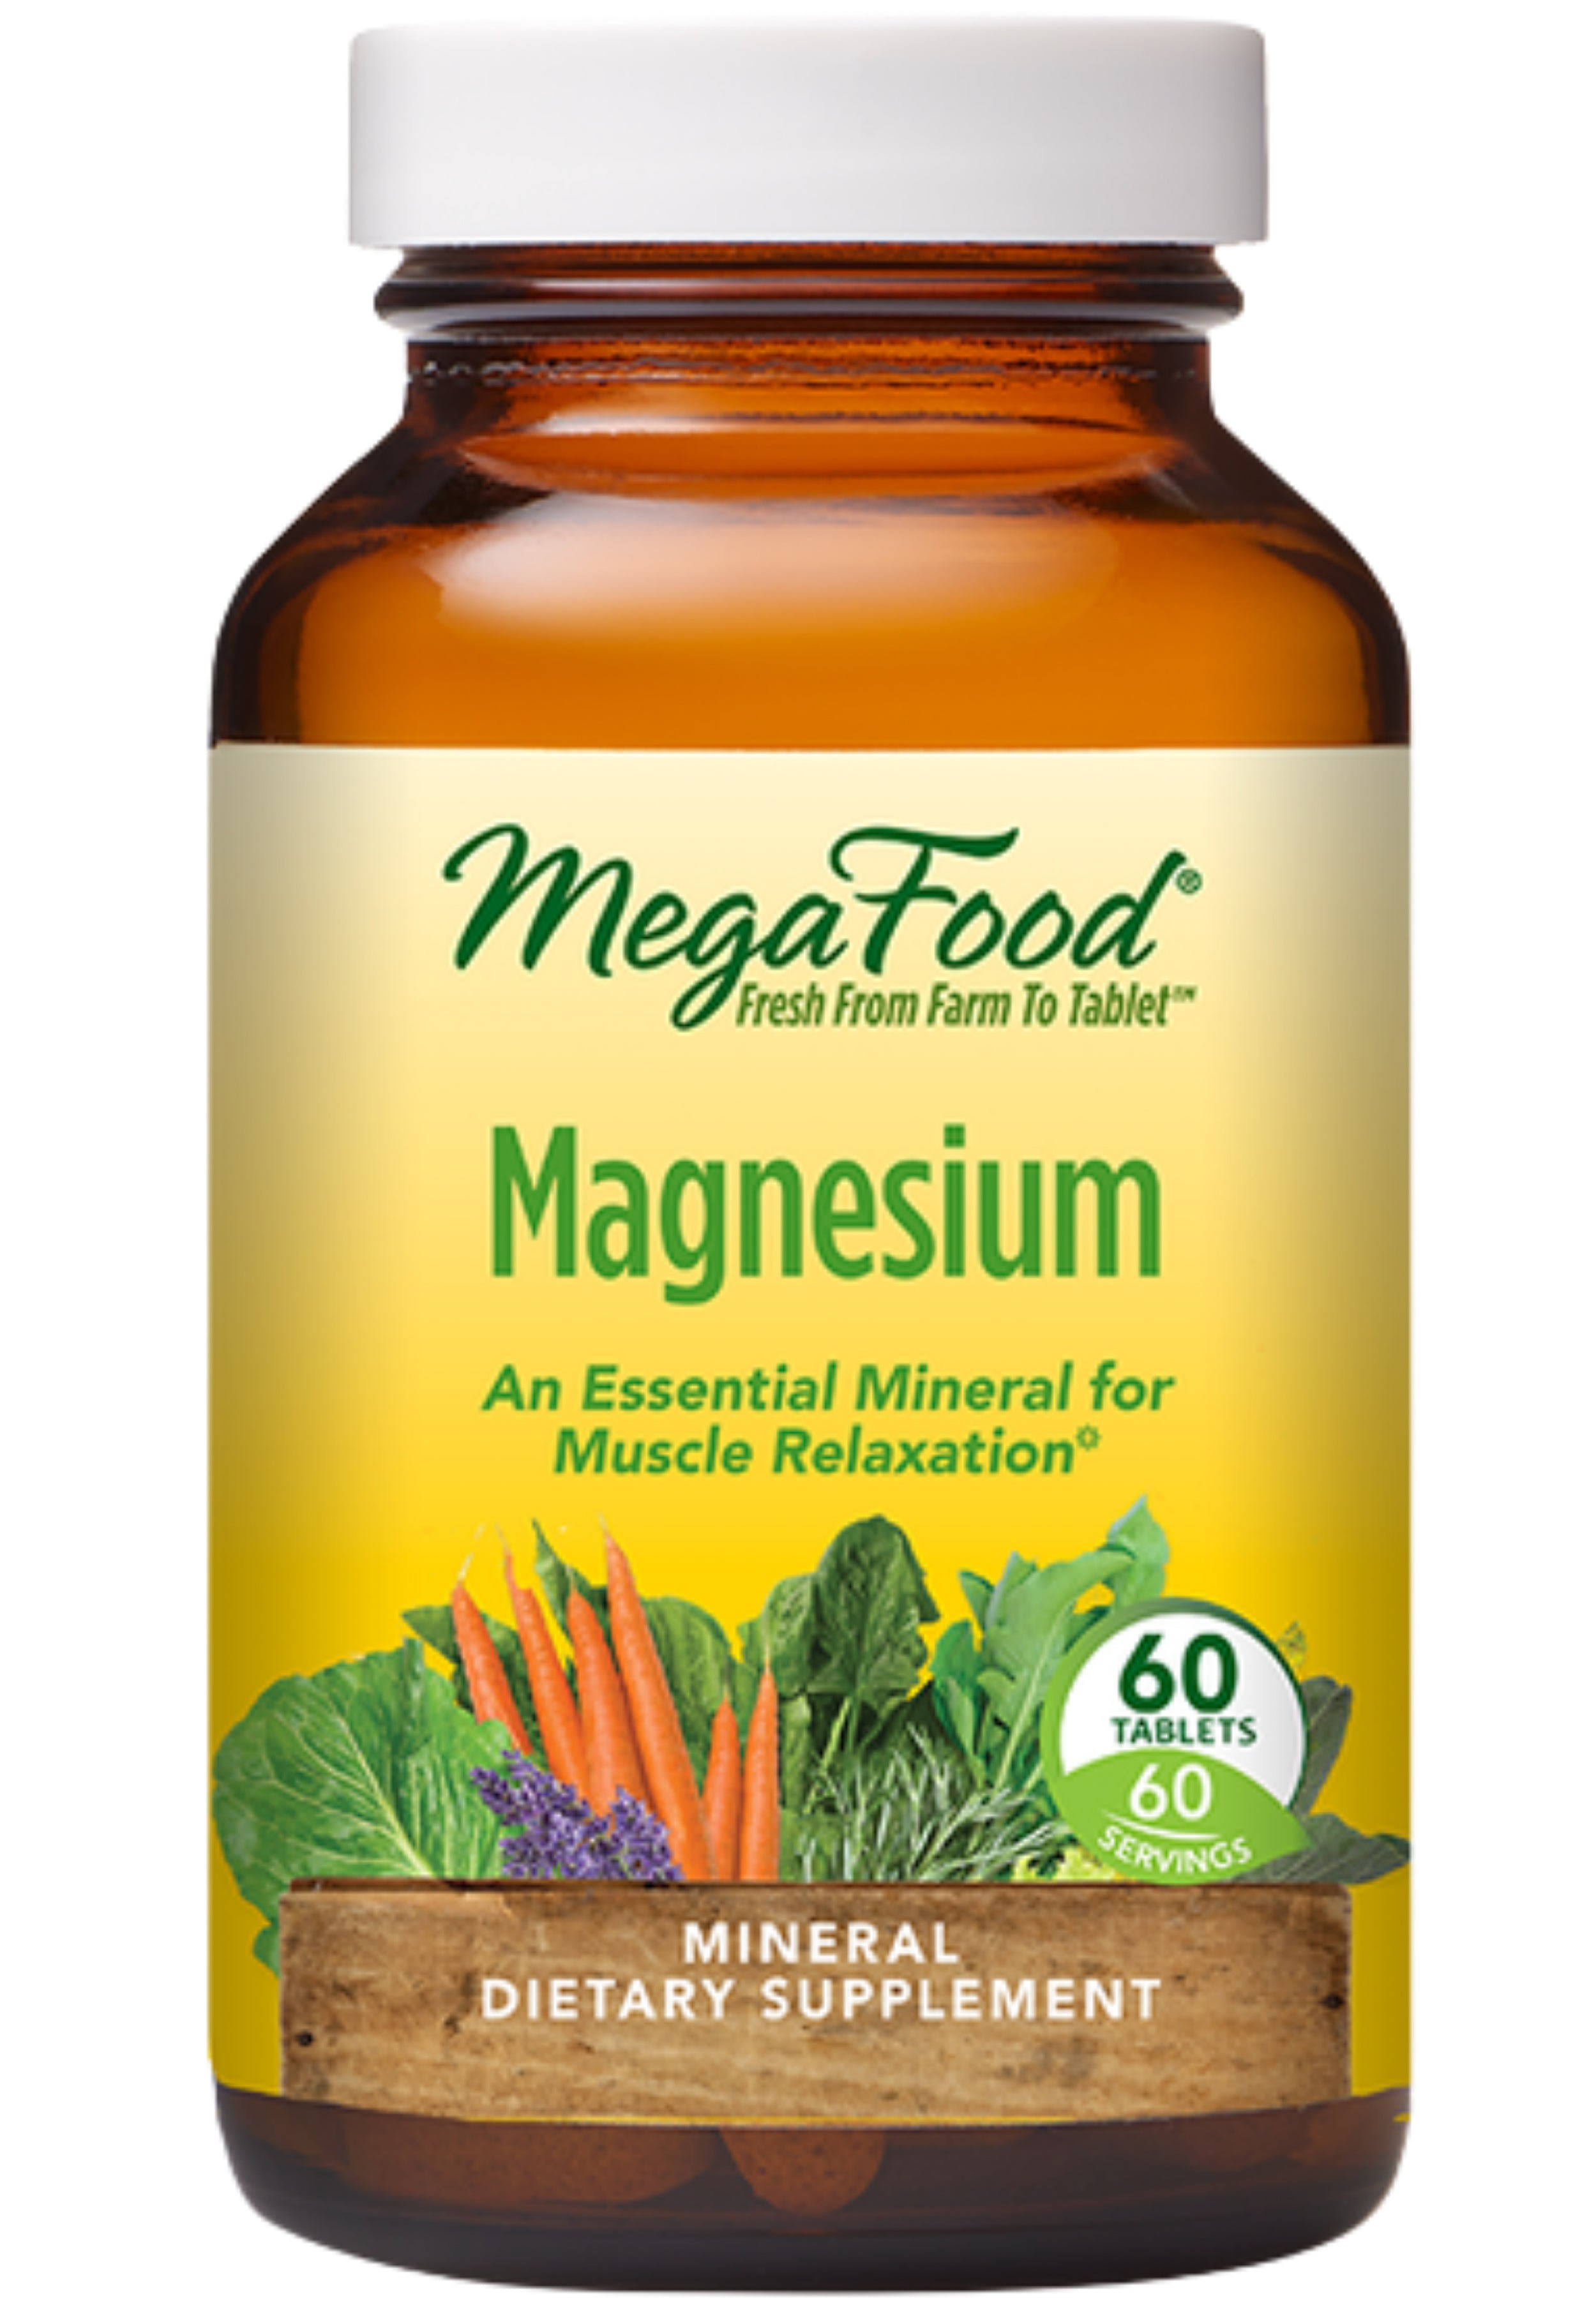 MegaFood Magnesium Tablets